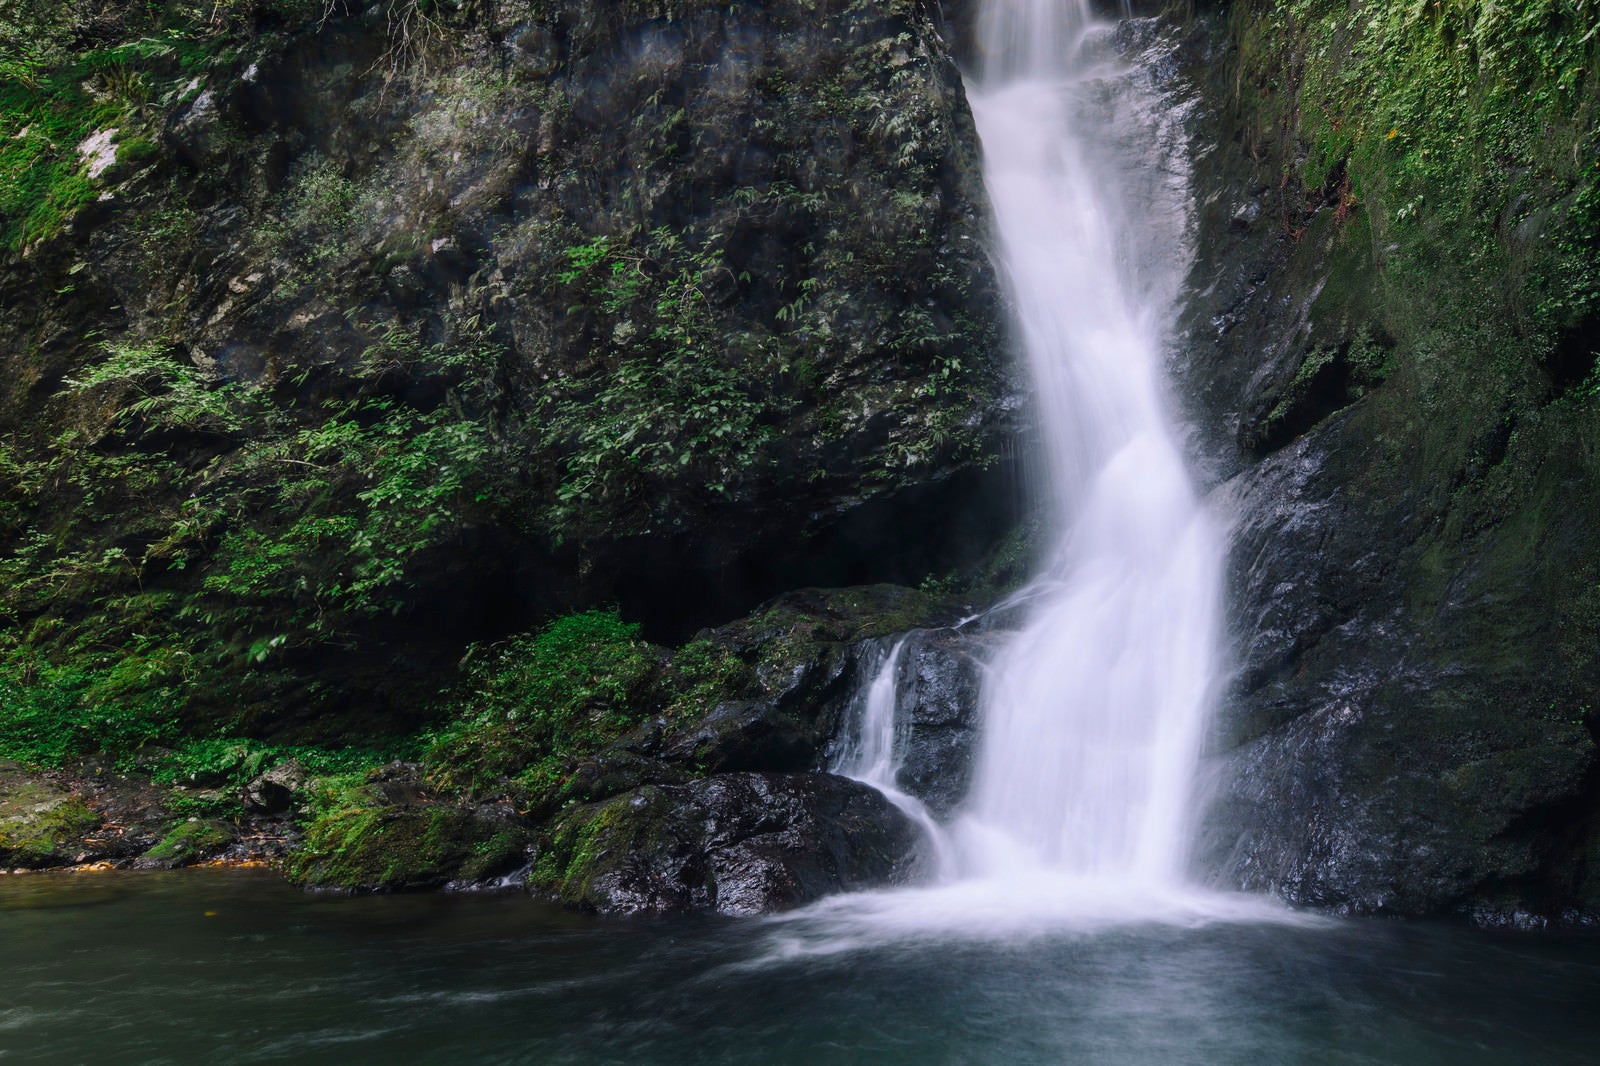 「滝つぼへと水が降り注ぐ海沢渓谷の大滝」の写真